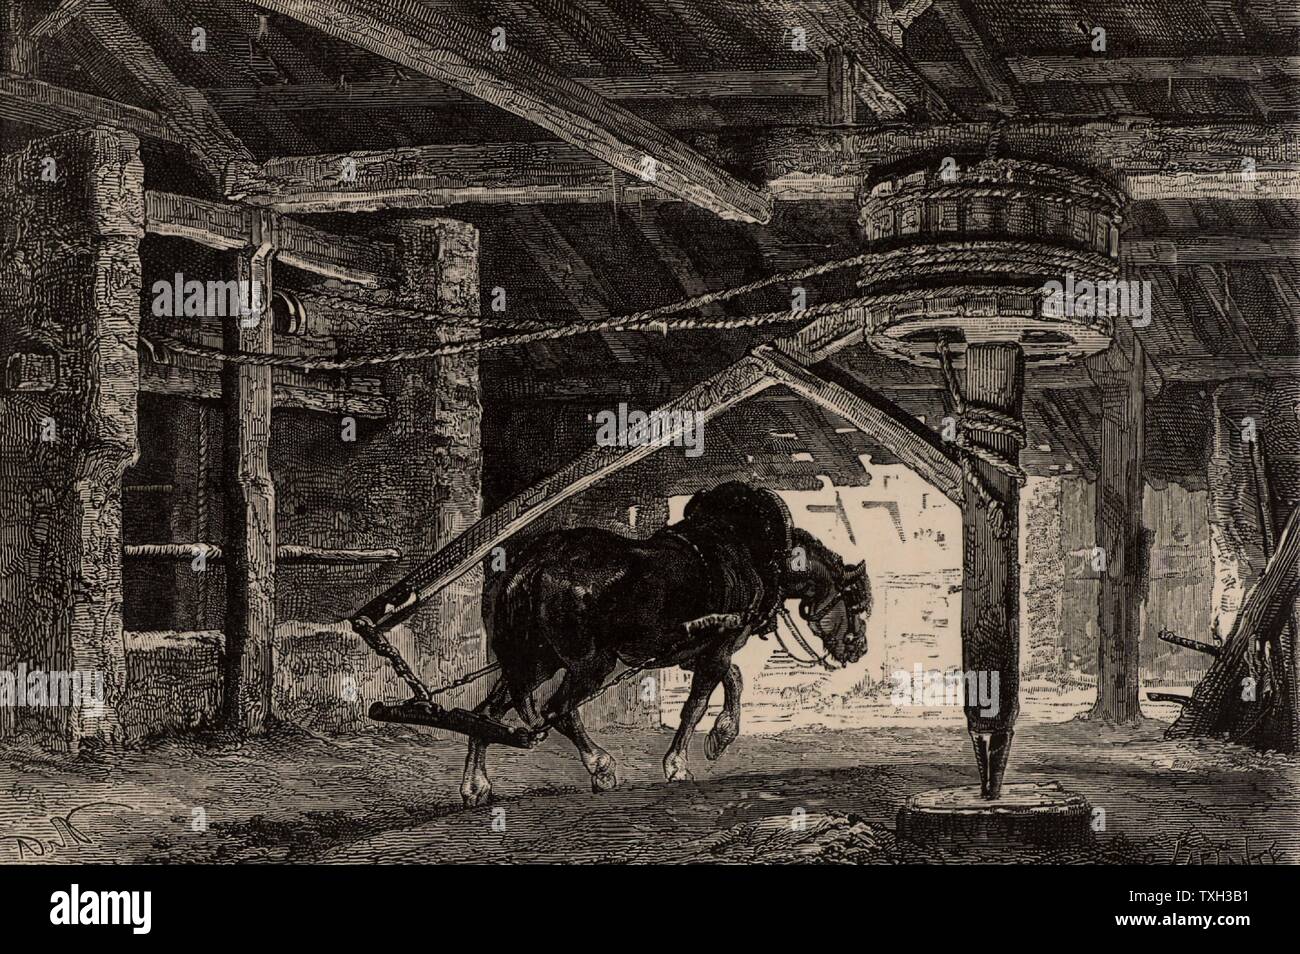 Ein Pferd-Laune oder Pferd - Gin. Ein solches Gerät wurde verwendet, um Kohle von unten auf eine Mine zu heben. Von "unterirdische Leben; Oder, Bergwerke und Bergleute" von Louis Simonin (London, 1869). Holzstich. Bergbau. Stockfoto